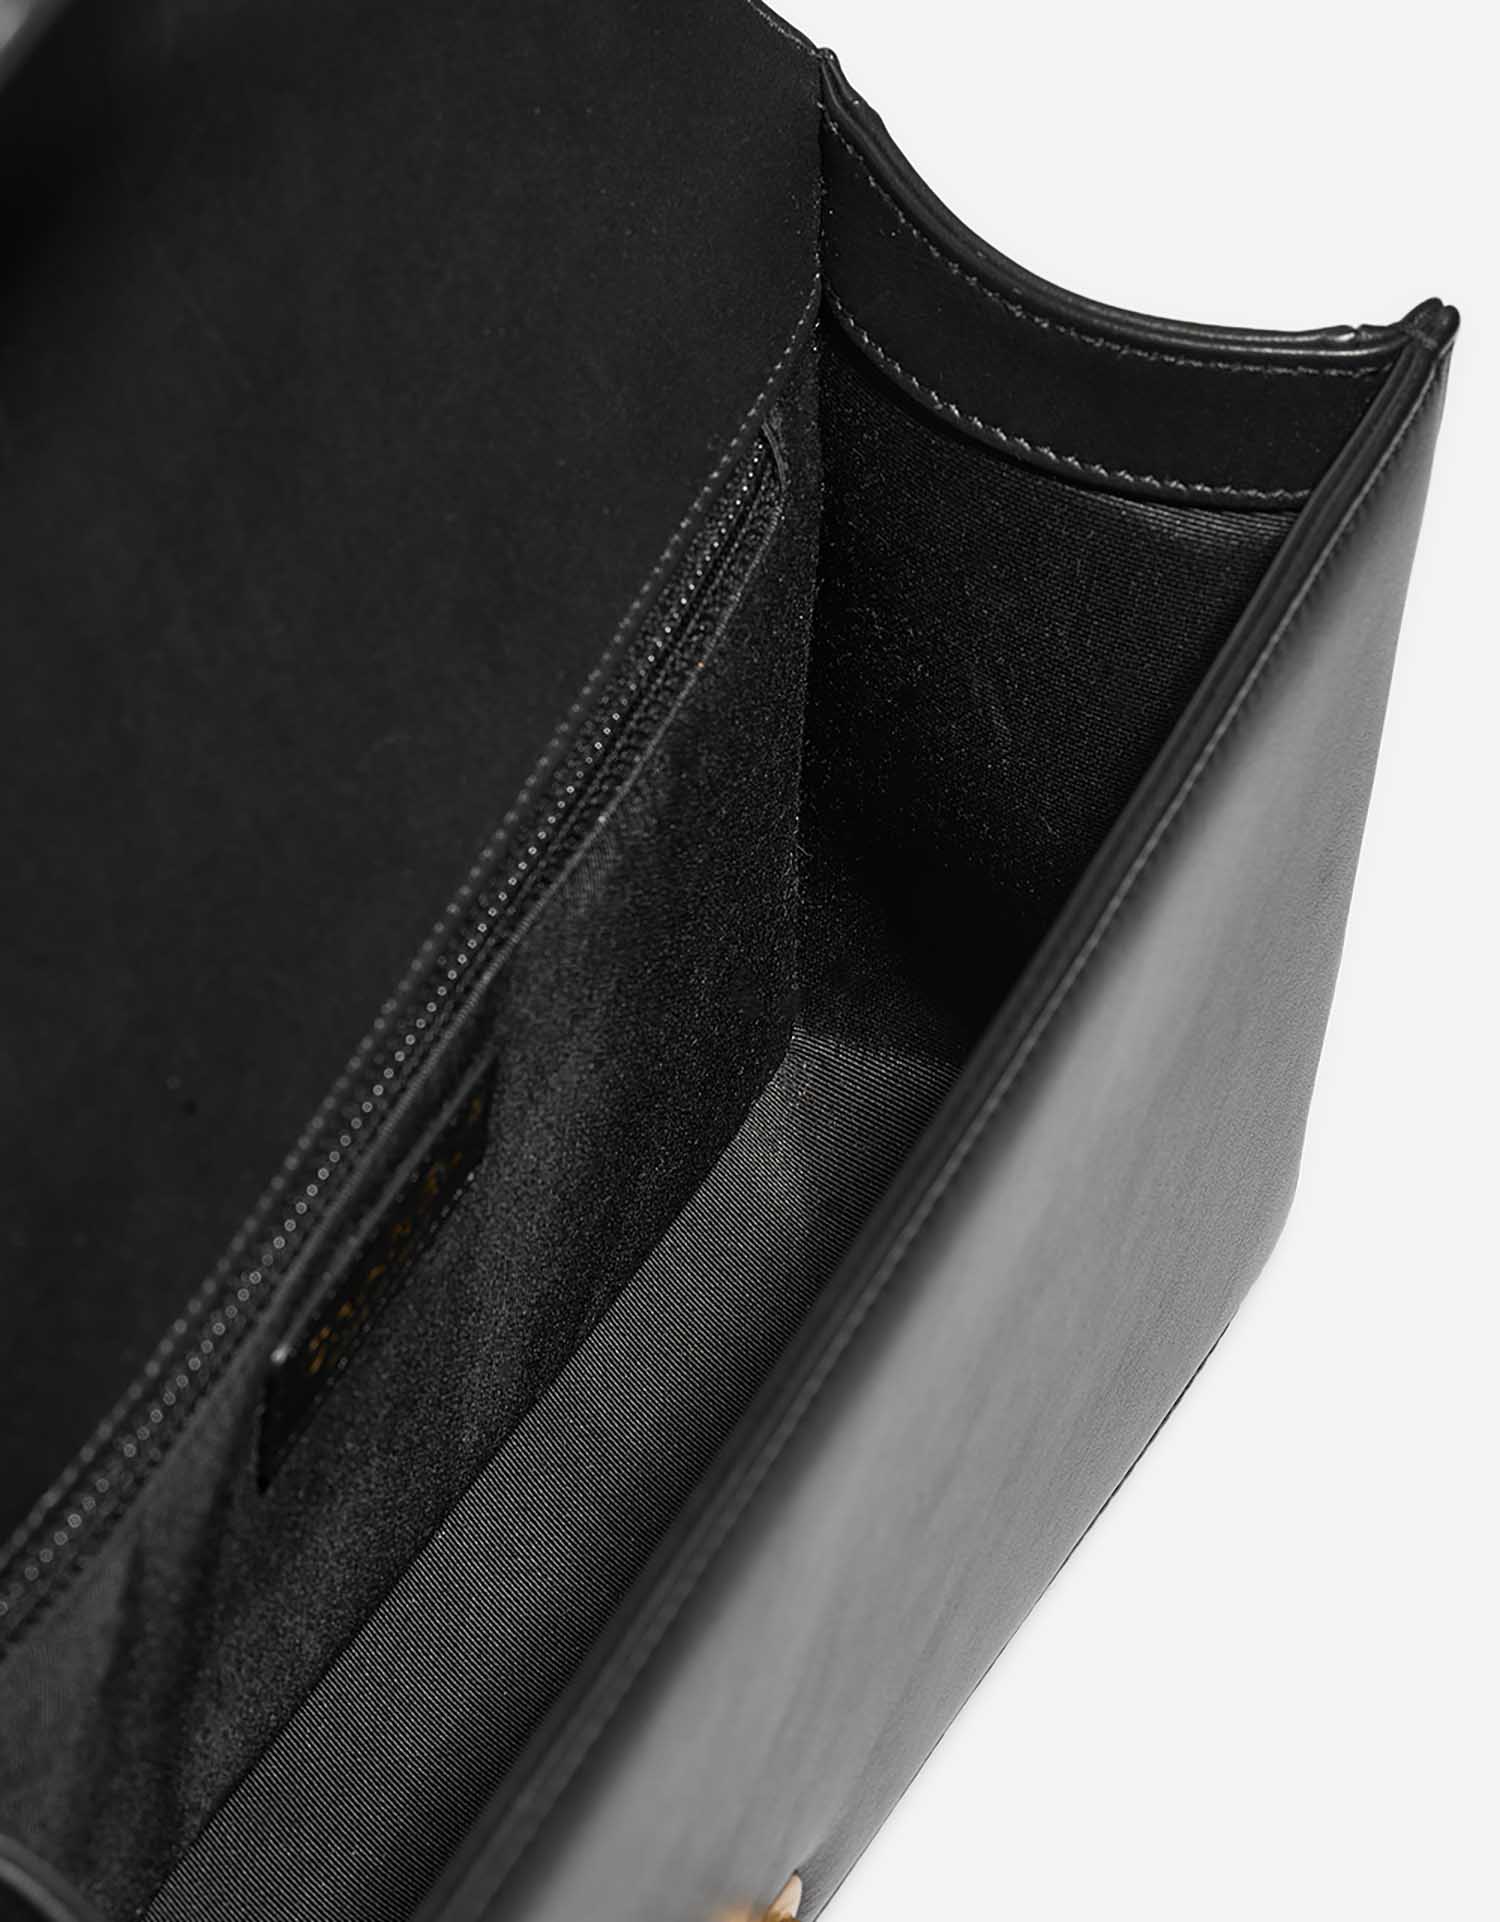 Chanel Boy NewMedium Black Inside  | Sell your designer bag on Saclab.com